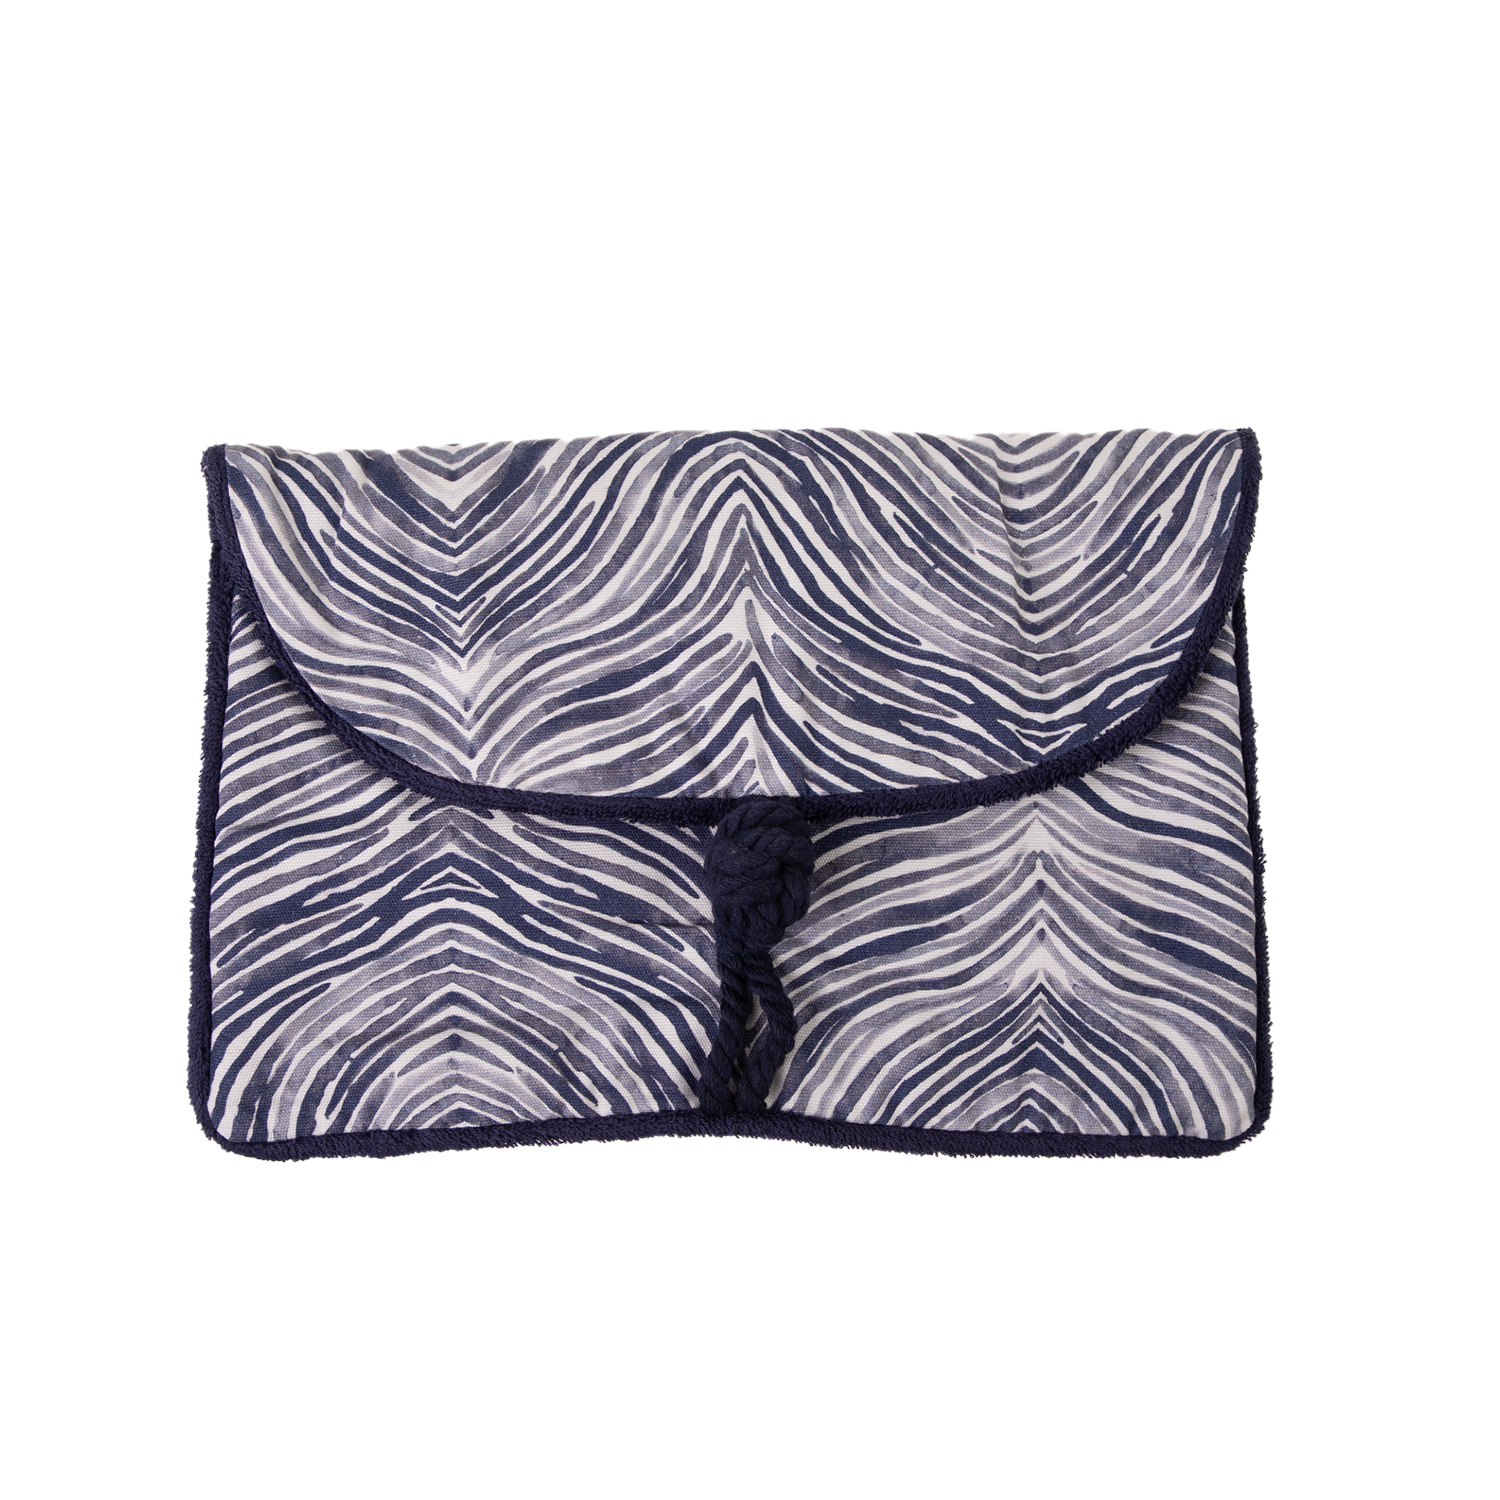 Γυναικεία/Αξεσουάρ/Τσάντες-Σακίδια/Νεσεσέρ SUN OF A BEACH - Γυναικείο τσαντάκι clutch SUN OF A BEACH Envelope Pouch μπλε λευκό